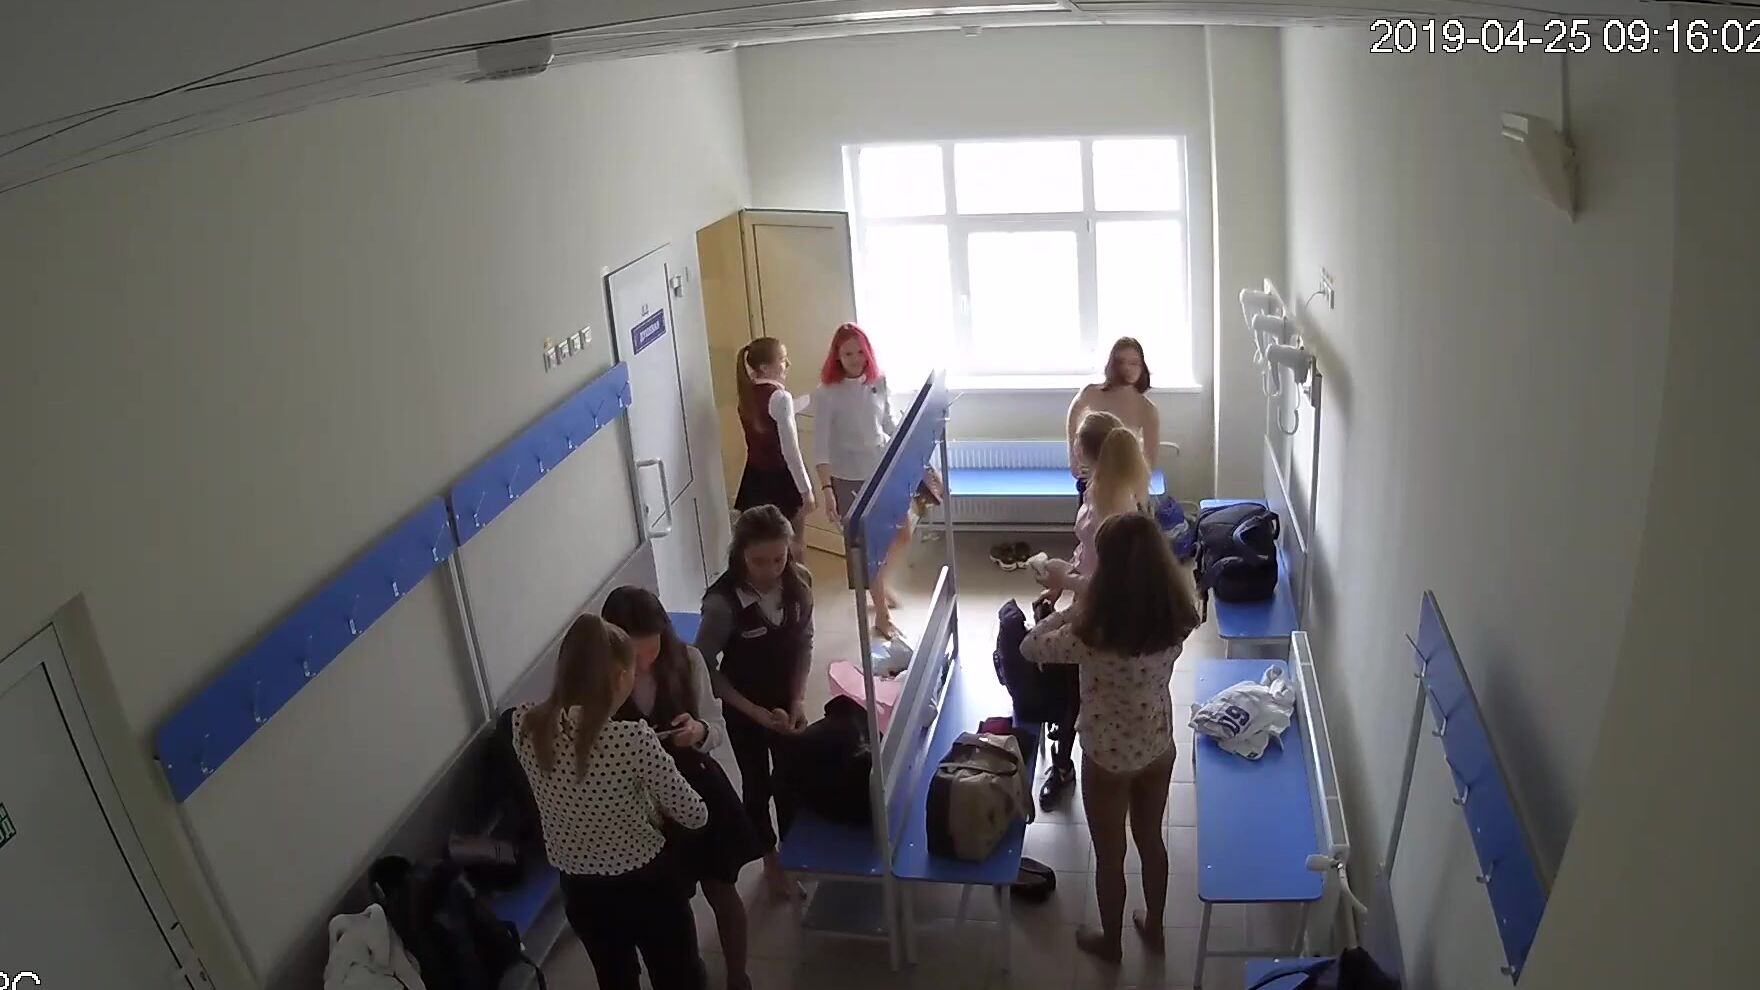 Переодевающиеся женщины попались на скрытую камеру в раздевалке